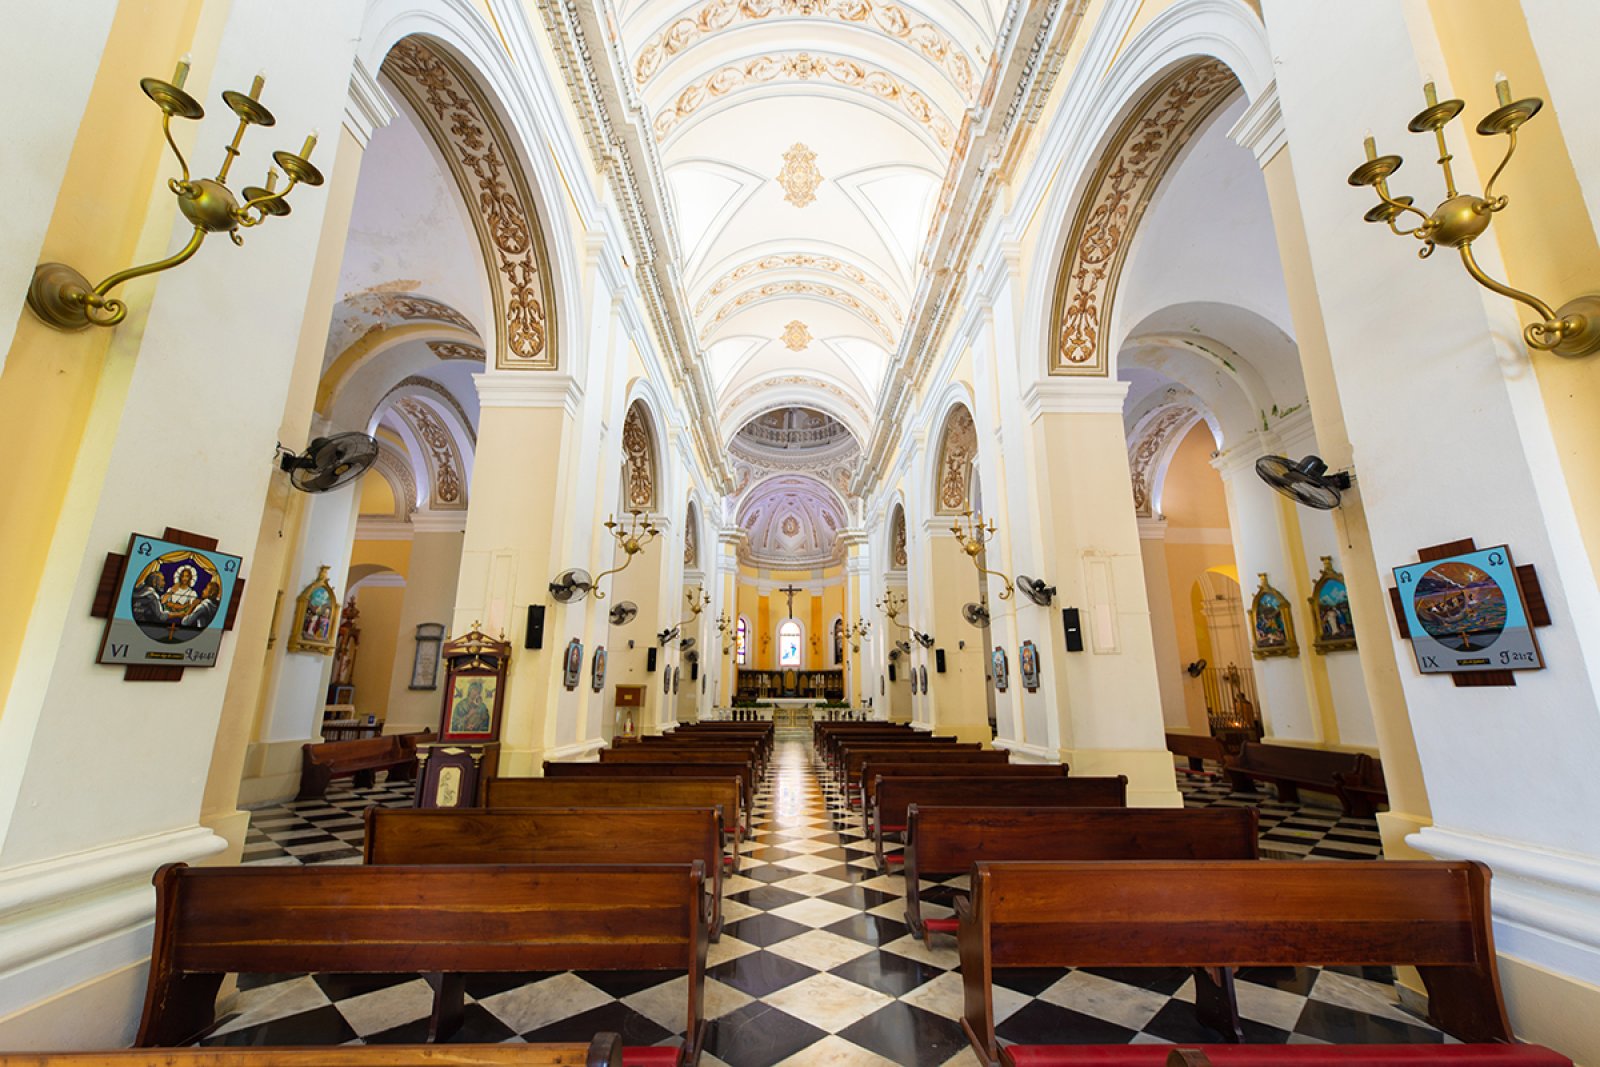 Vista interior de la Catedral de San Juan Bautista, que es la iglesia más antigua en suelo estadounidense y fue construida en 1521.